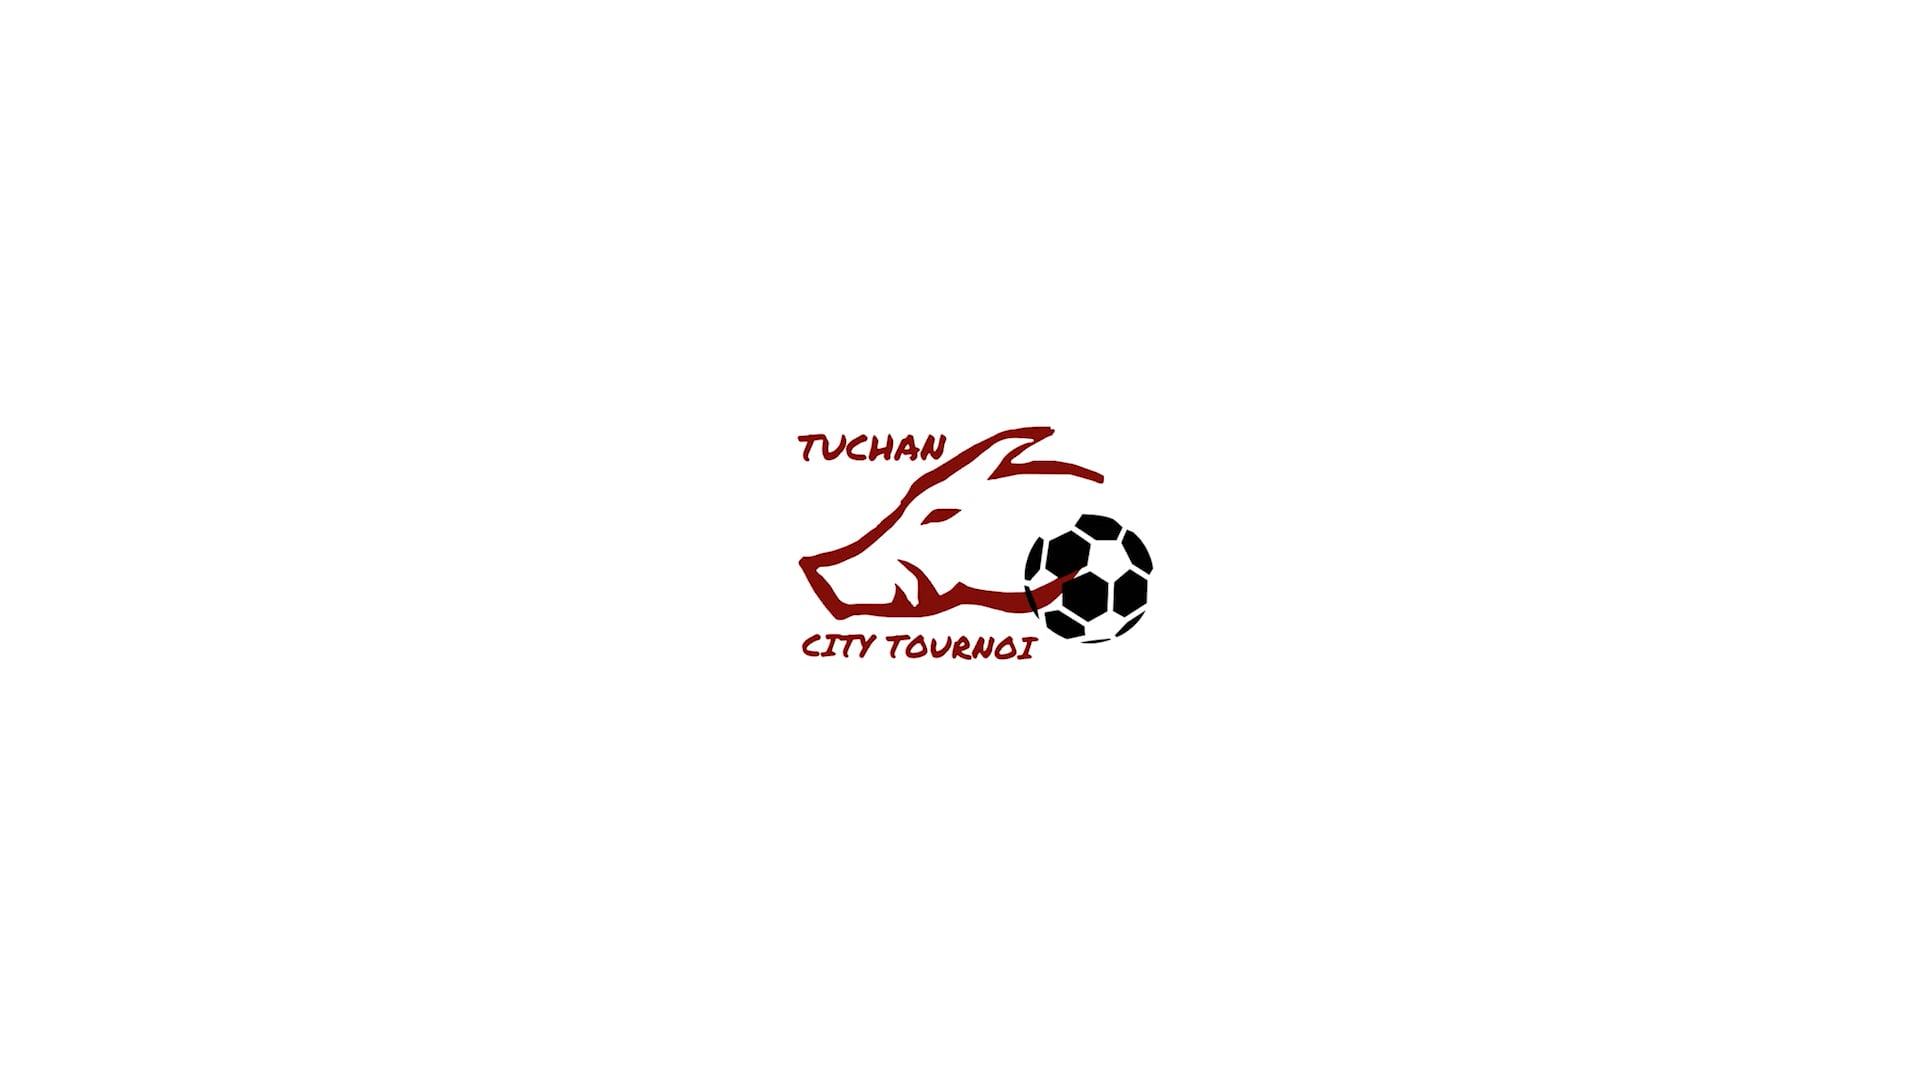 City Tournois Tuchan